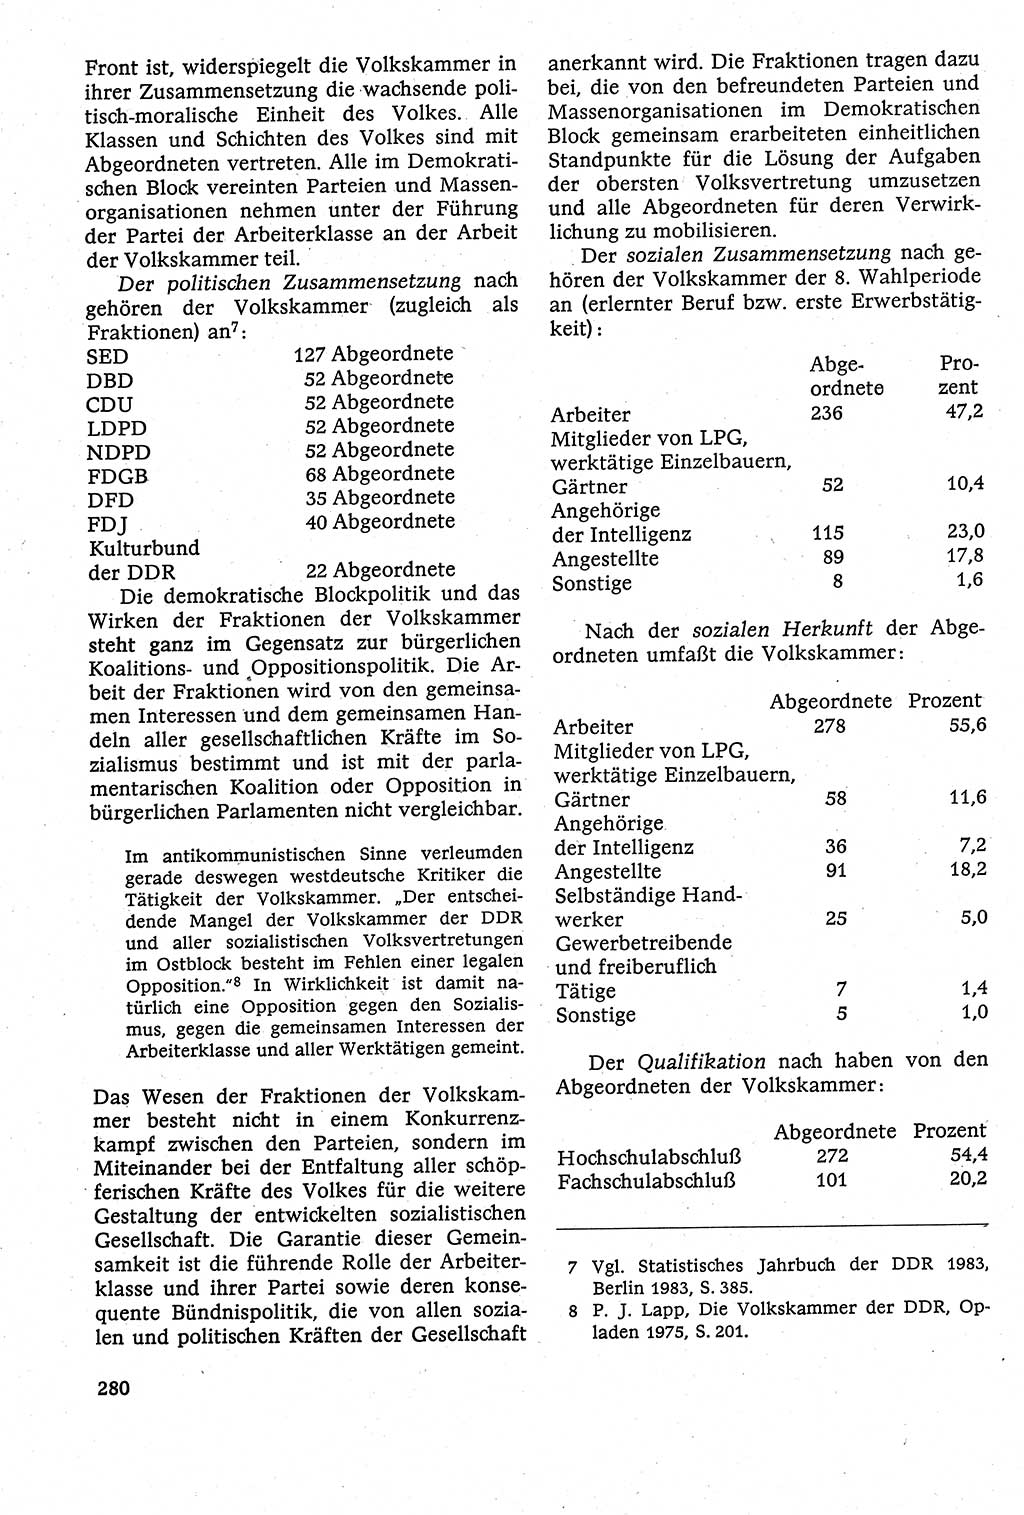 Staatsrecht der DDR [Deutsche Demokratische Republik (DDR)], Lehrbuch 1984, Seite 280 (St.-R. DDR Lb. 1984, S. 280)